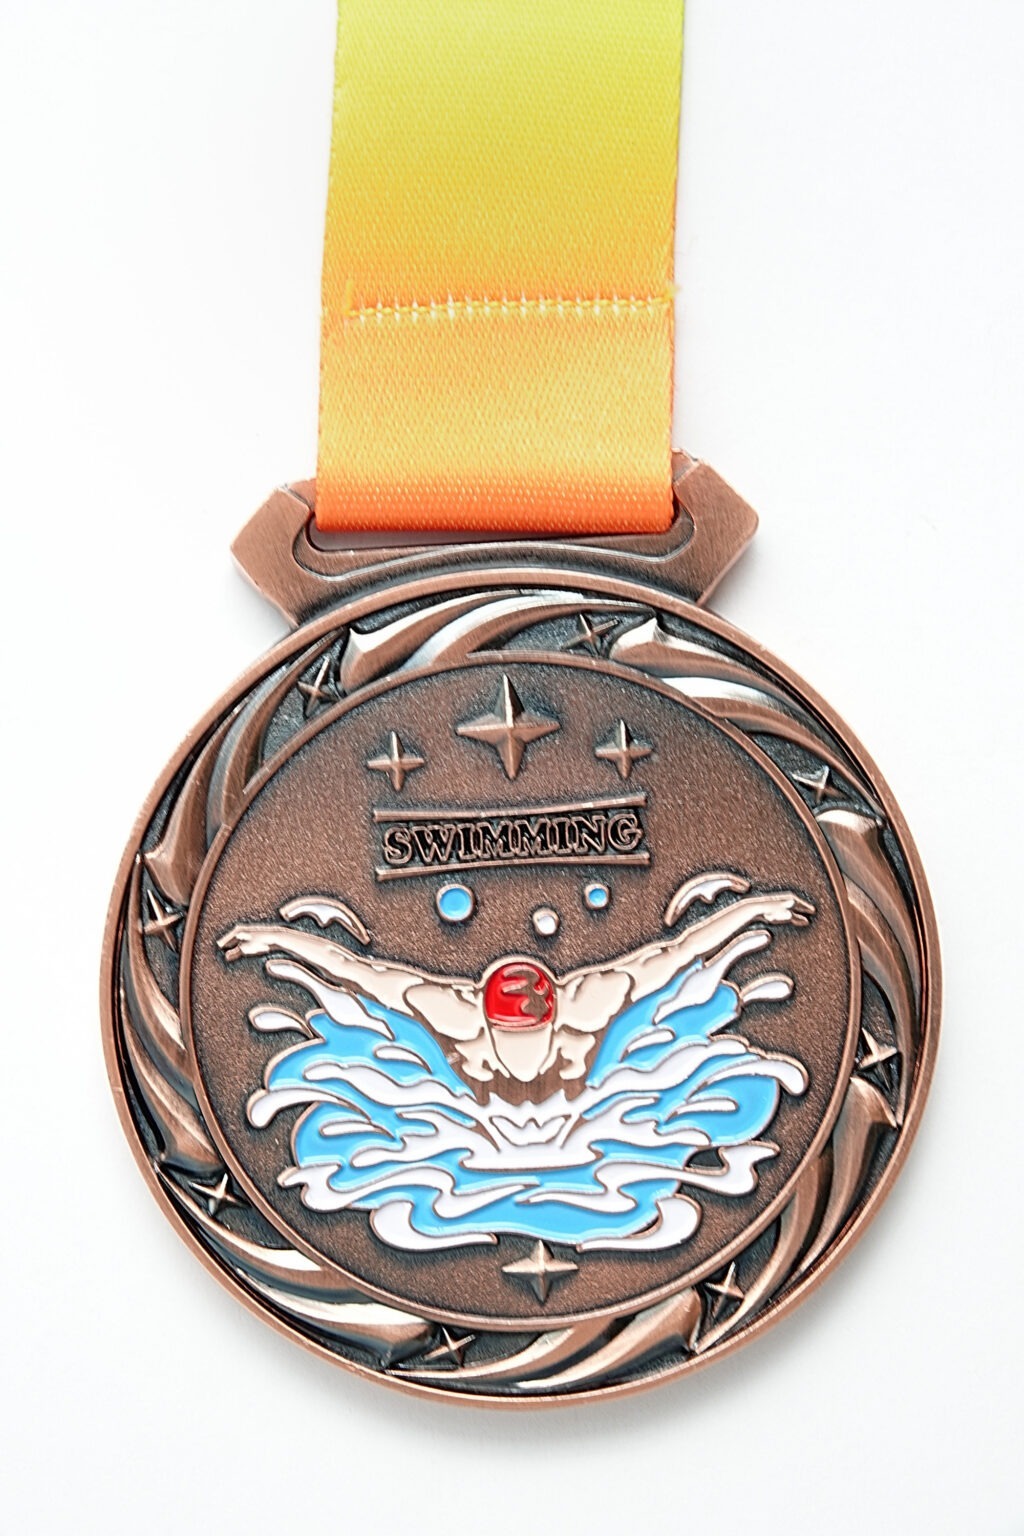 Vorderseite Medaille "Swimming"